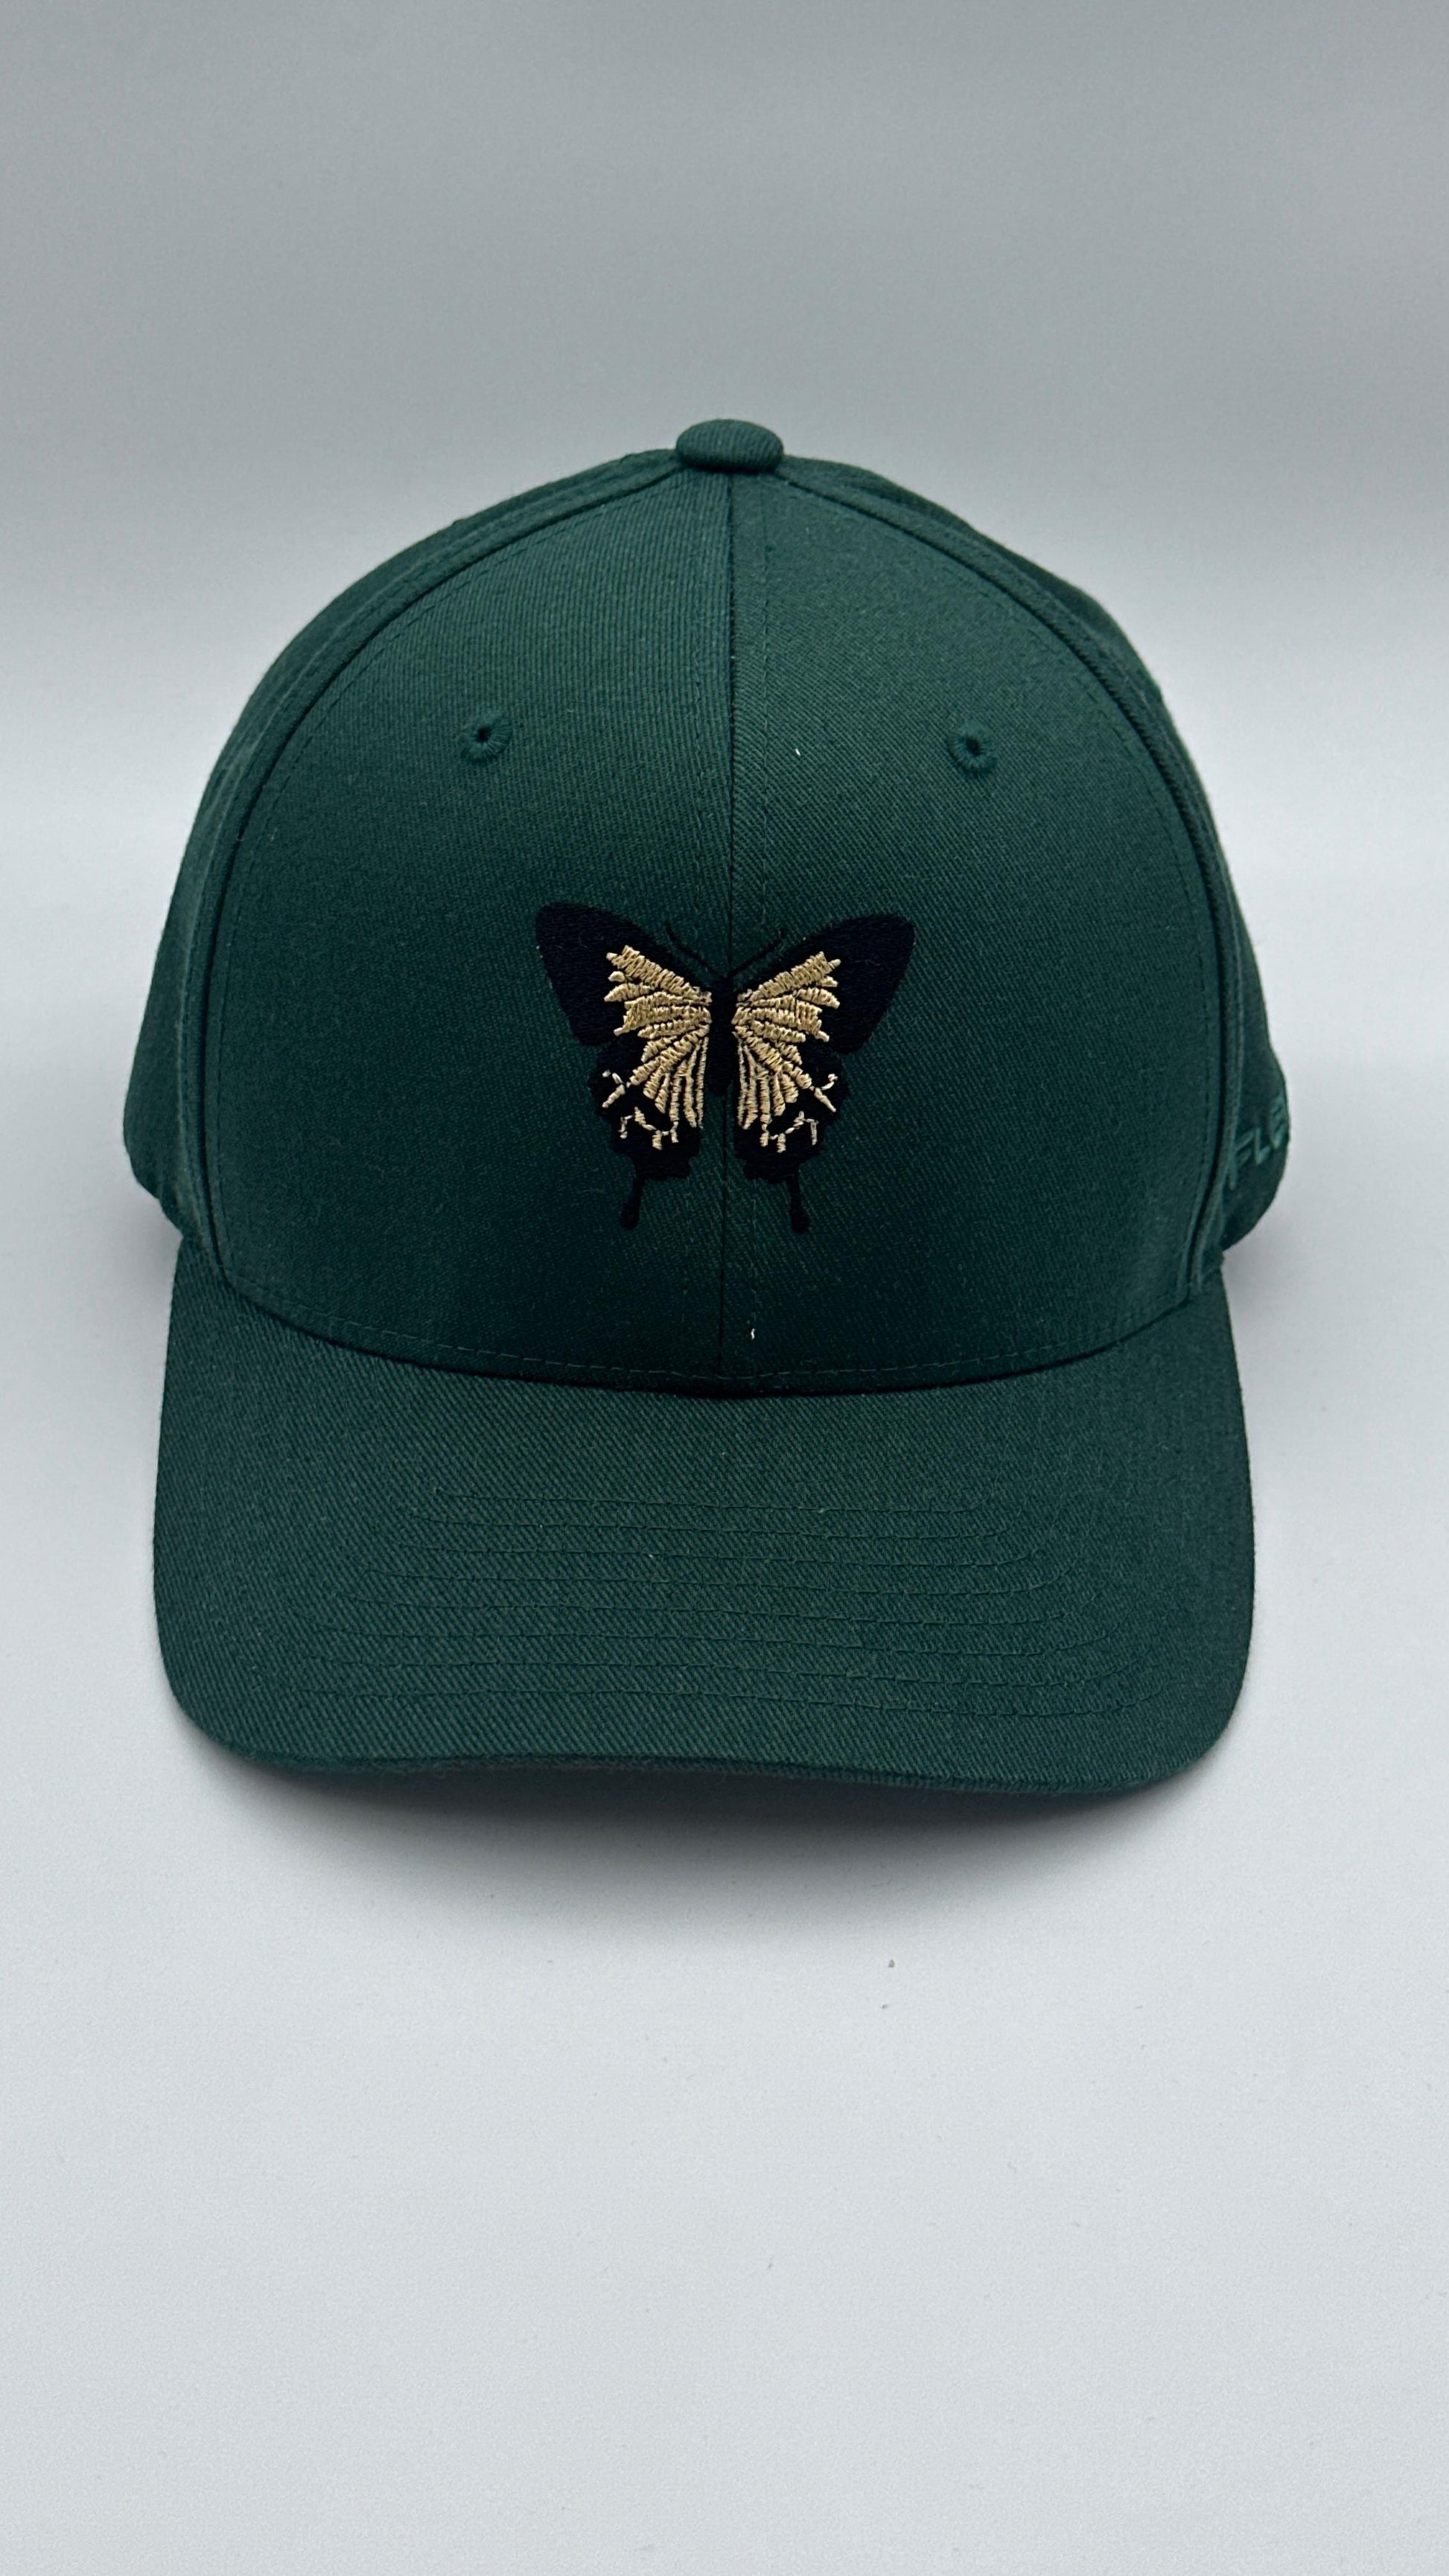 Butterfly Cap “Green Bottle” - Butterfly Sneakers